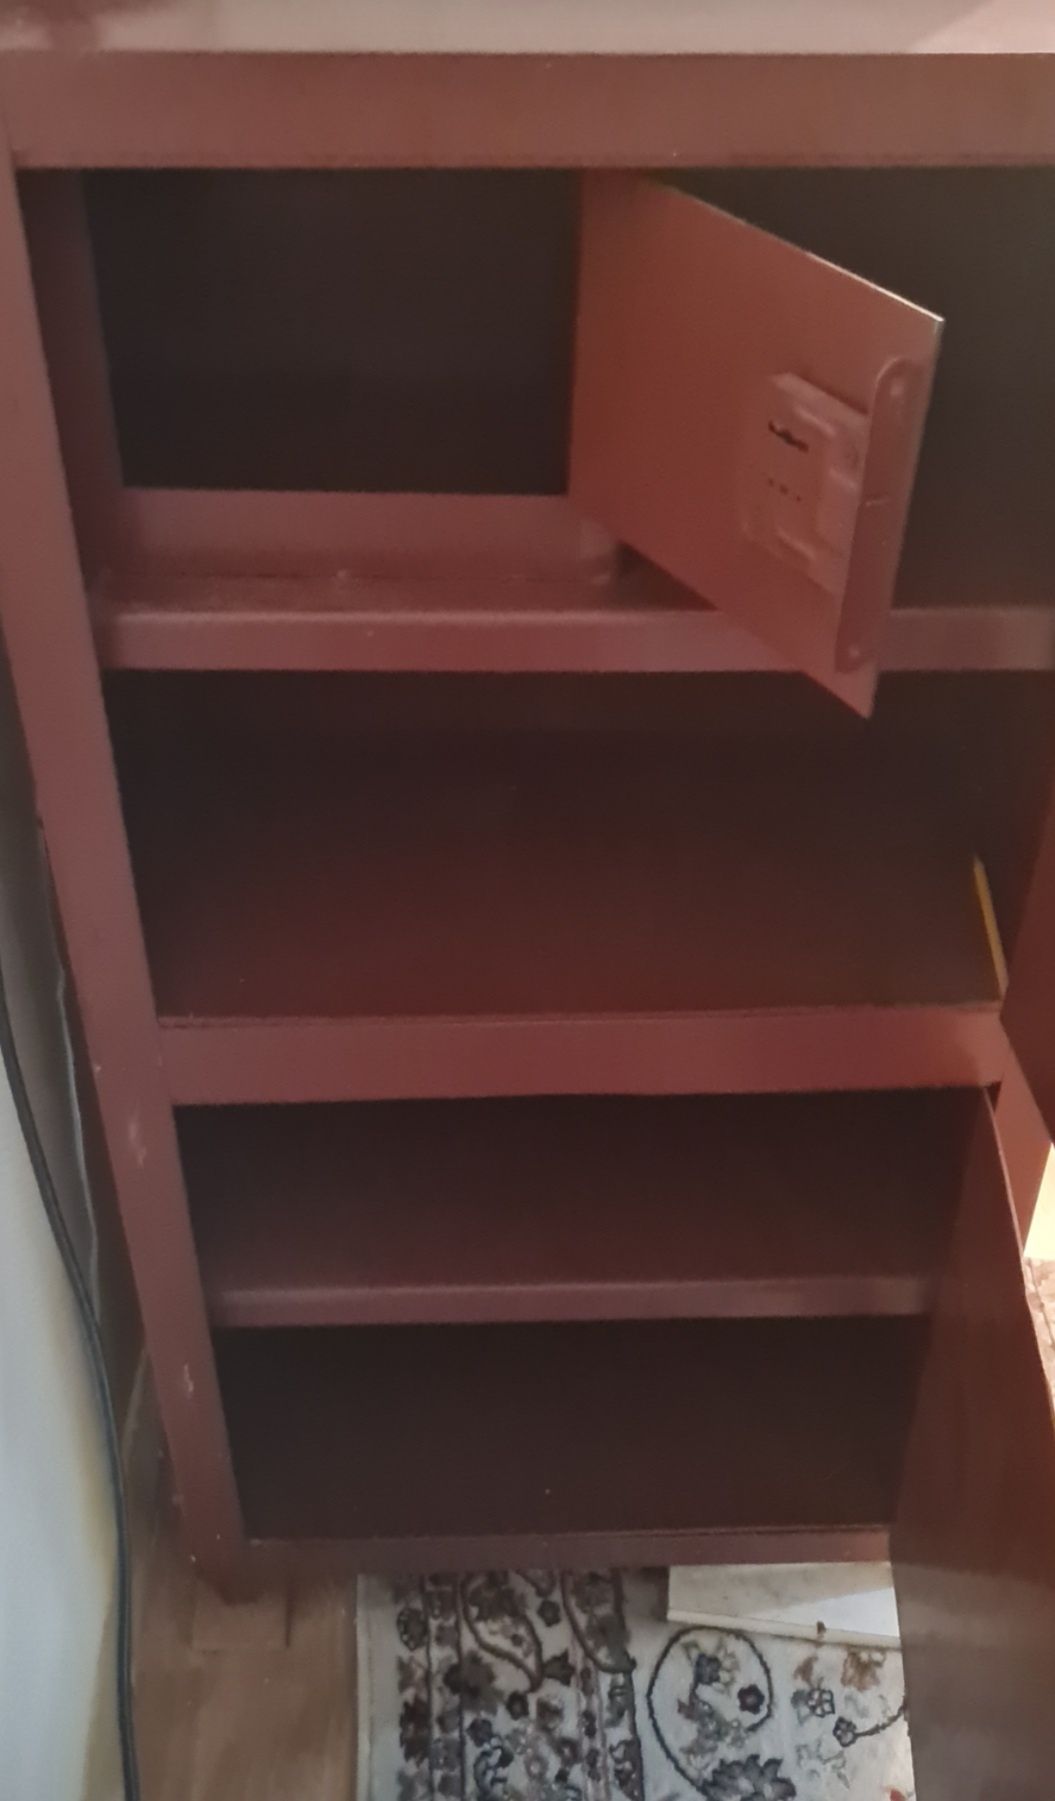 Сейфовый шкаф коричневого цвета